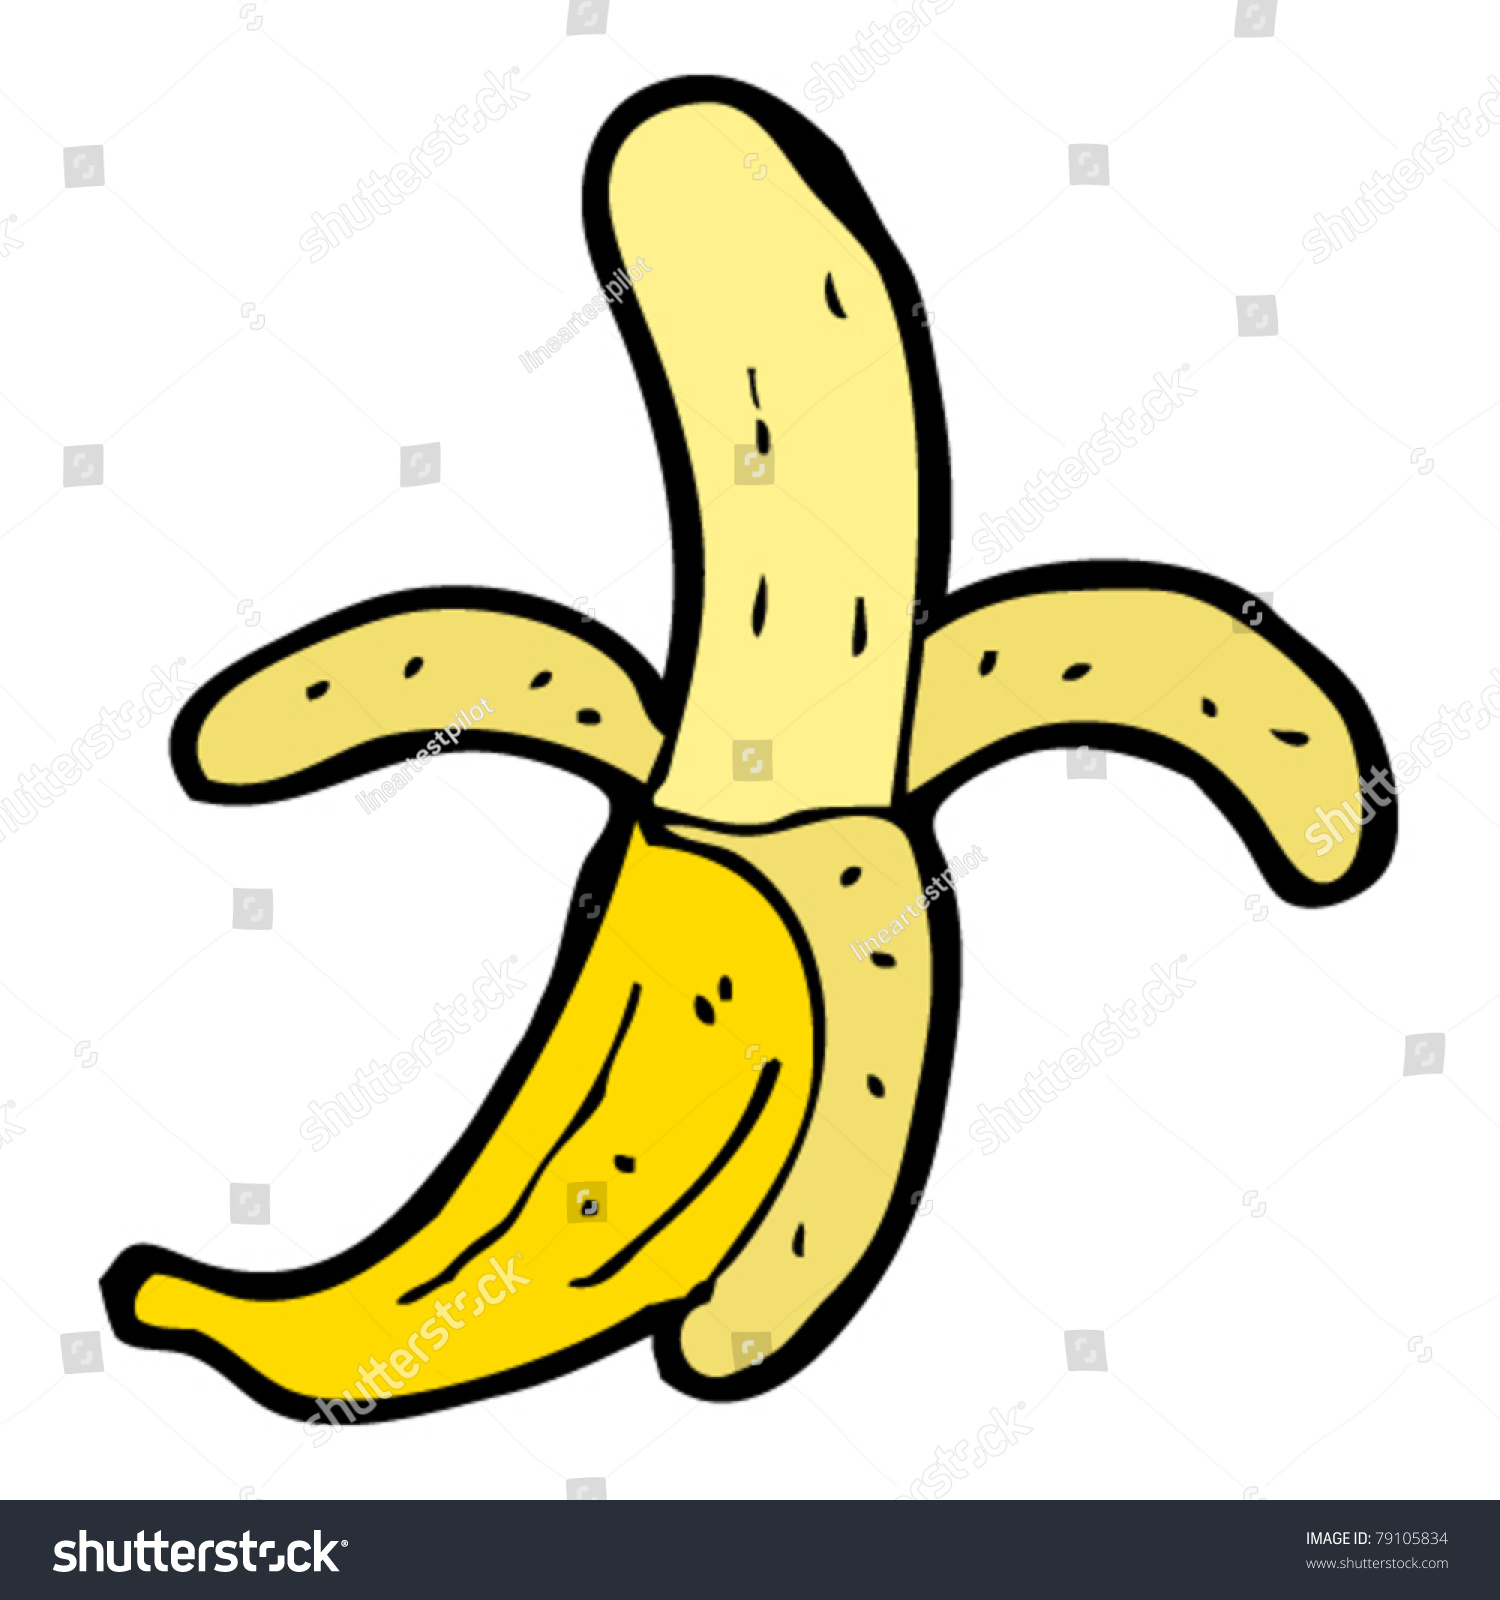 Banana Cartoon Stock Vector Illustration 79105834 : Shutterstock